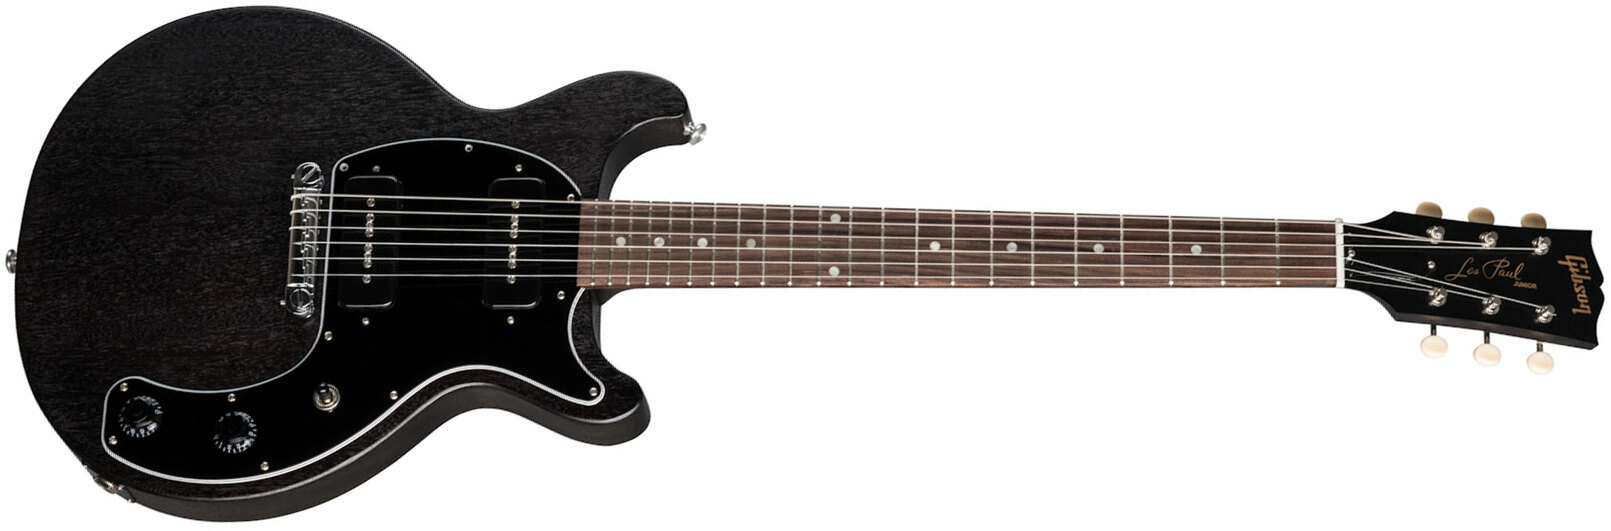 Gibson Les Paul Special Tribute Dc Modern P90 - Worn Ebony - Guitarra eléctrica de doble corte - Main picture